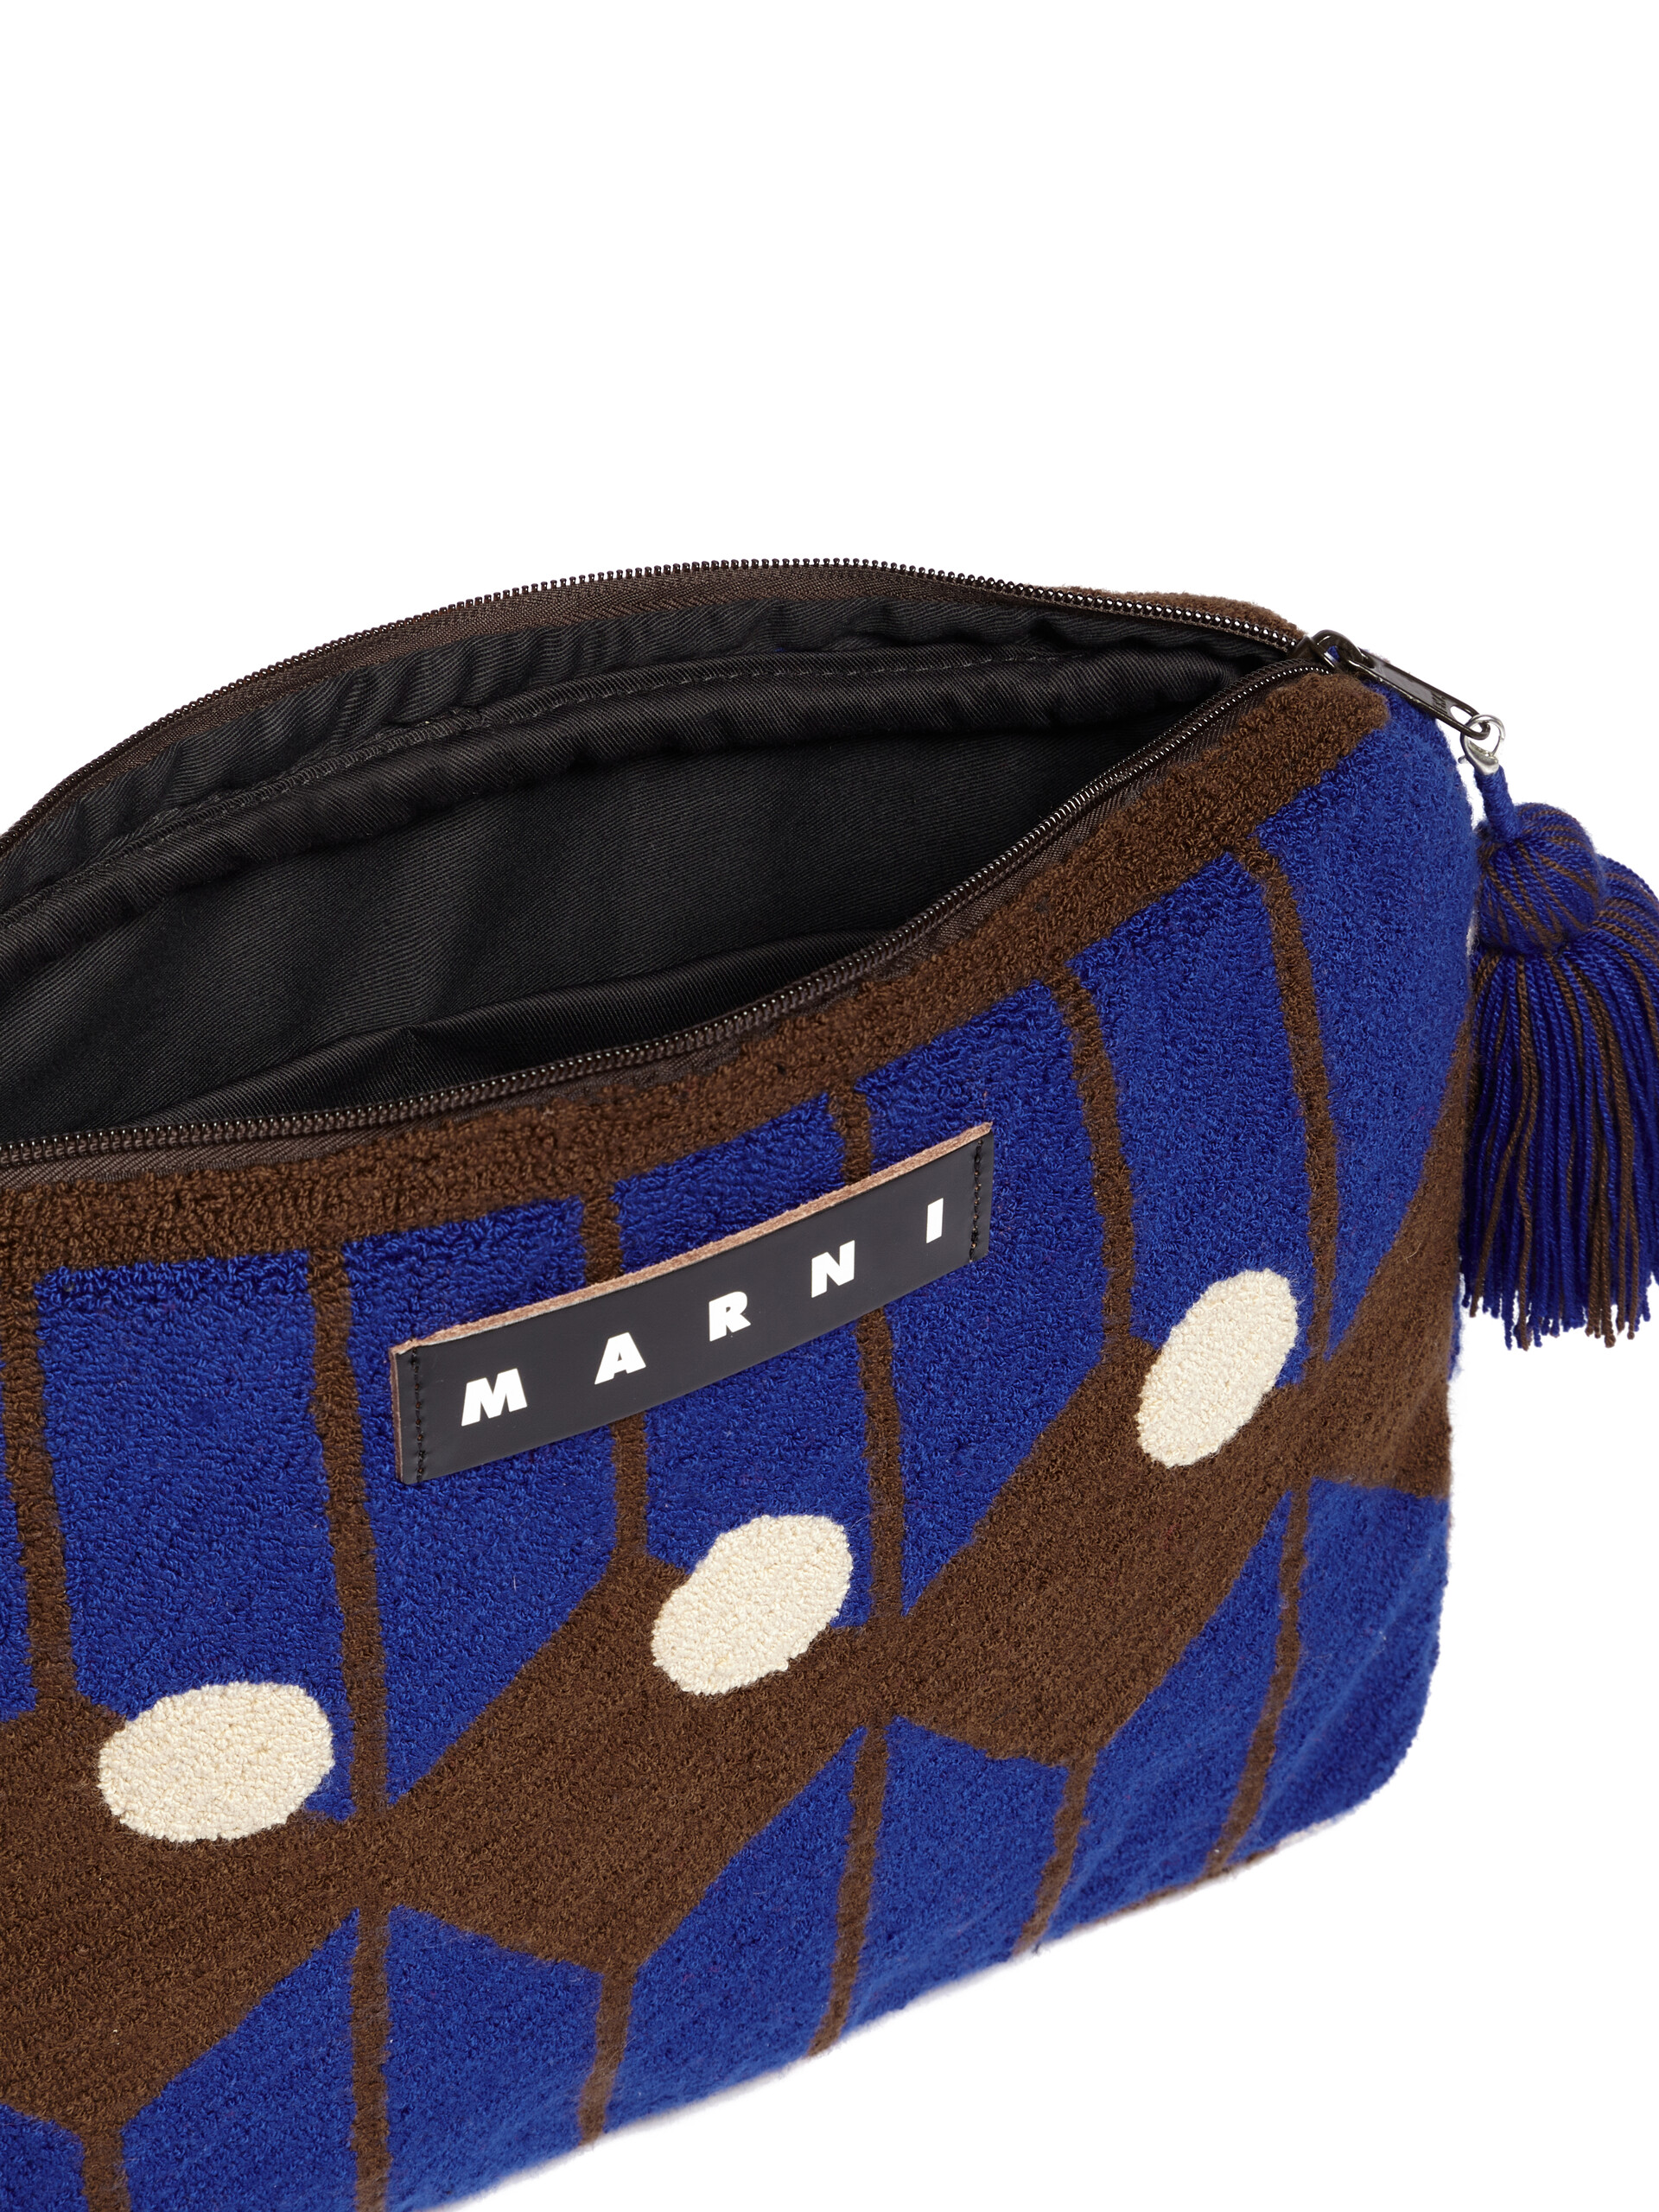 Housse pour ordinateur portable Marni Market bleue et marron en laine - Accessoires - Image 4